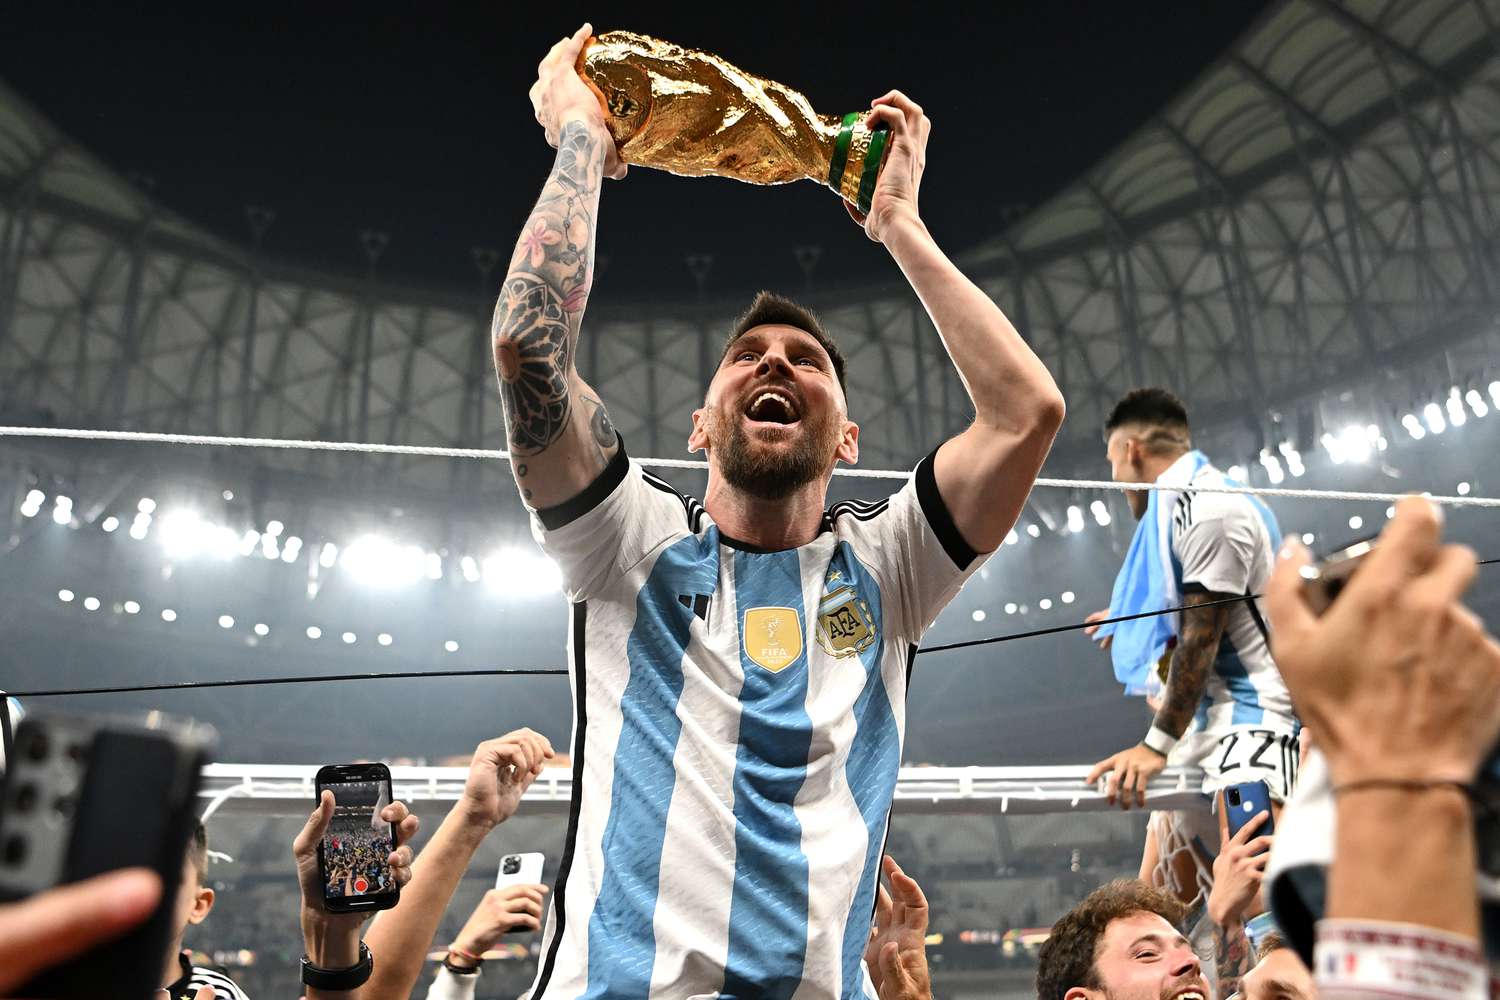 Lionel Messi Leads Argentina